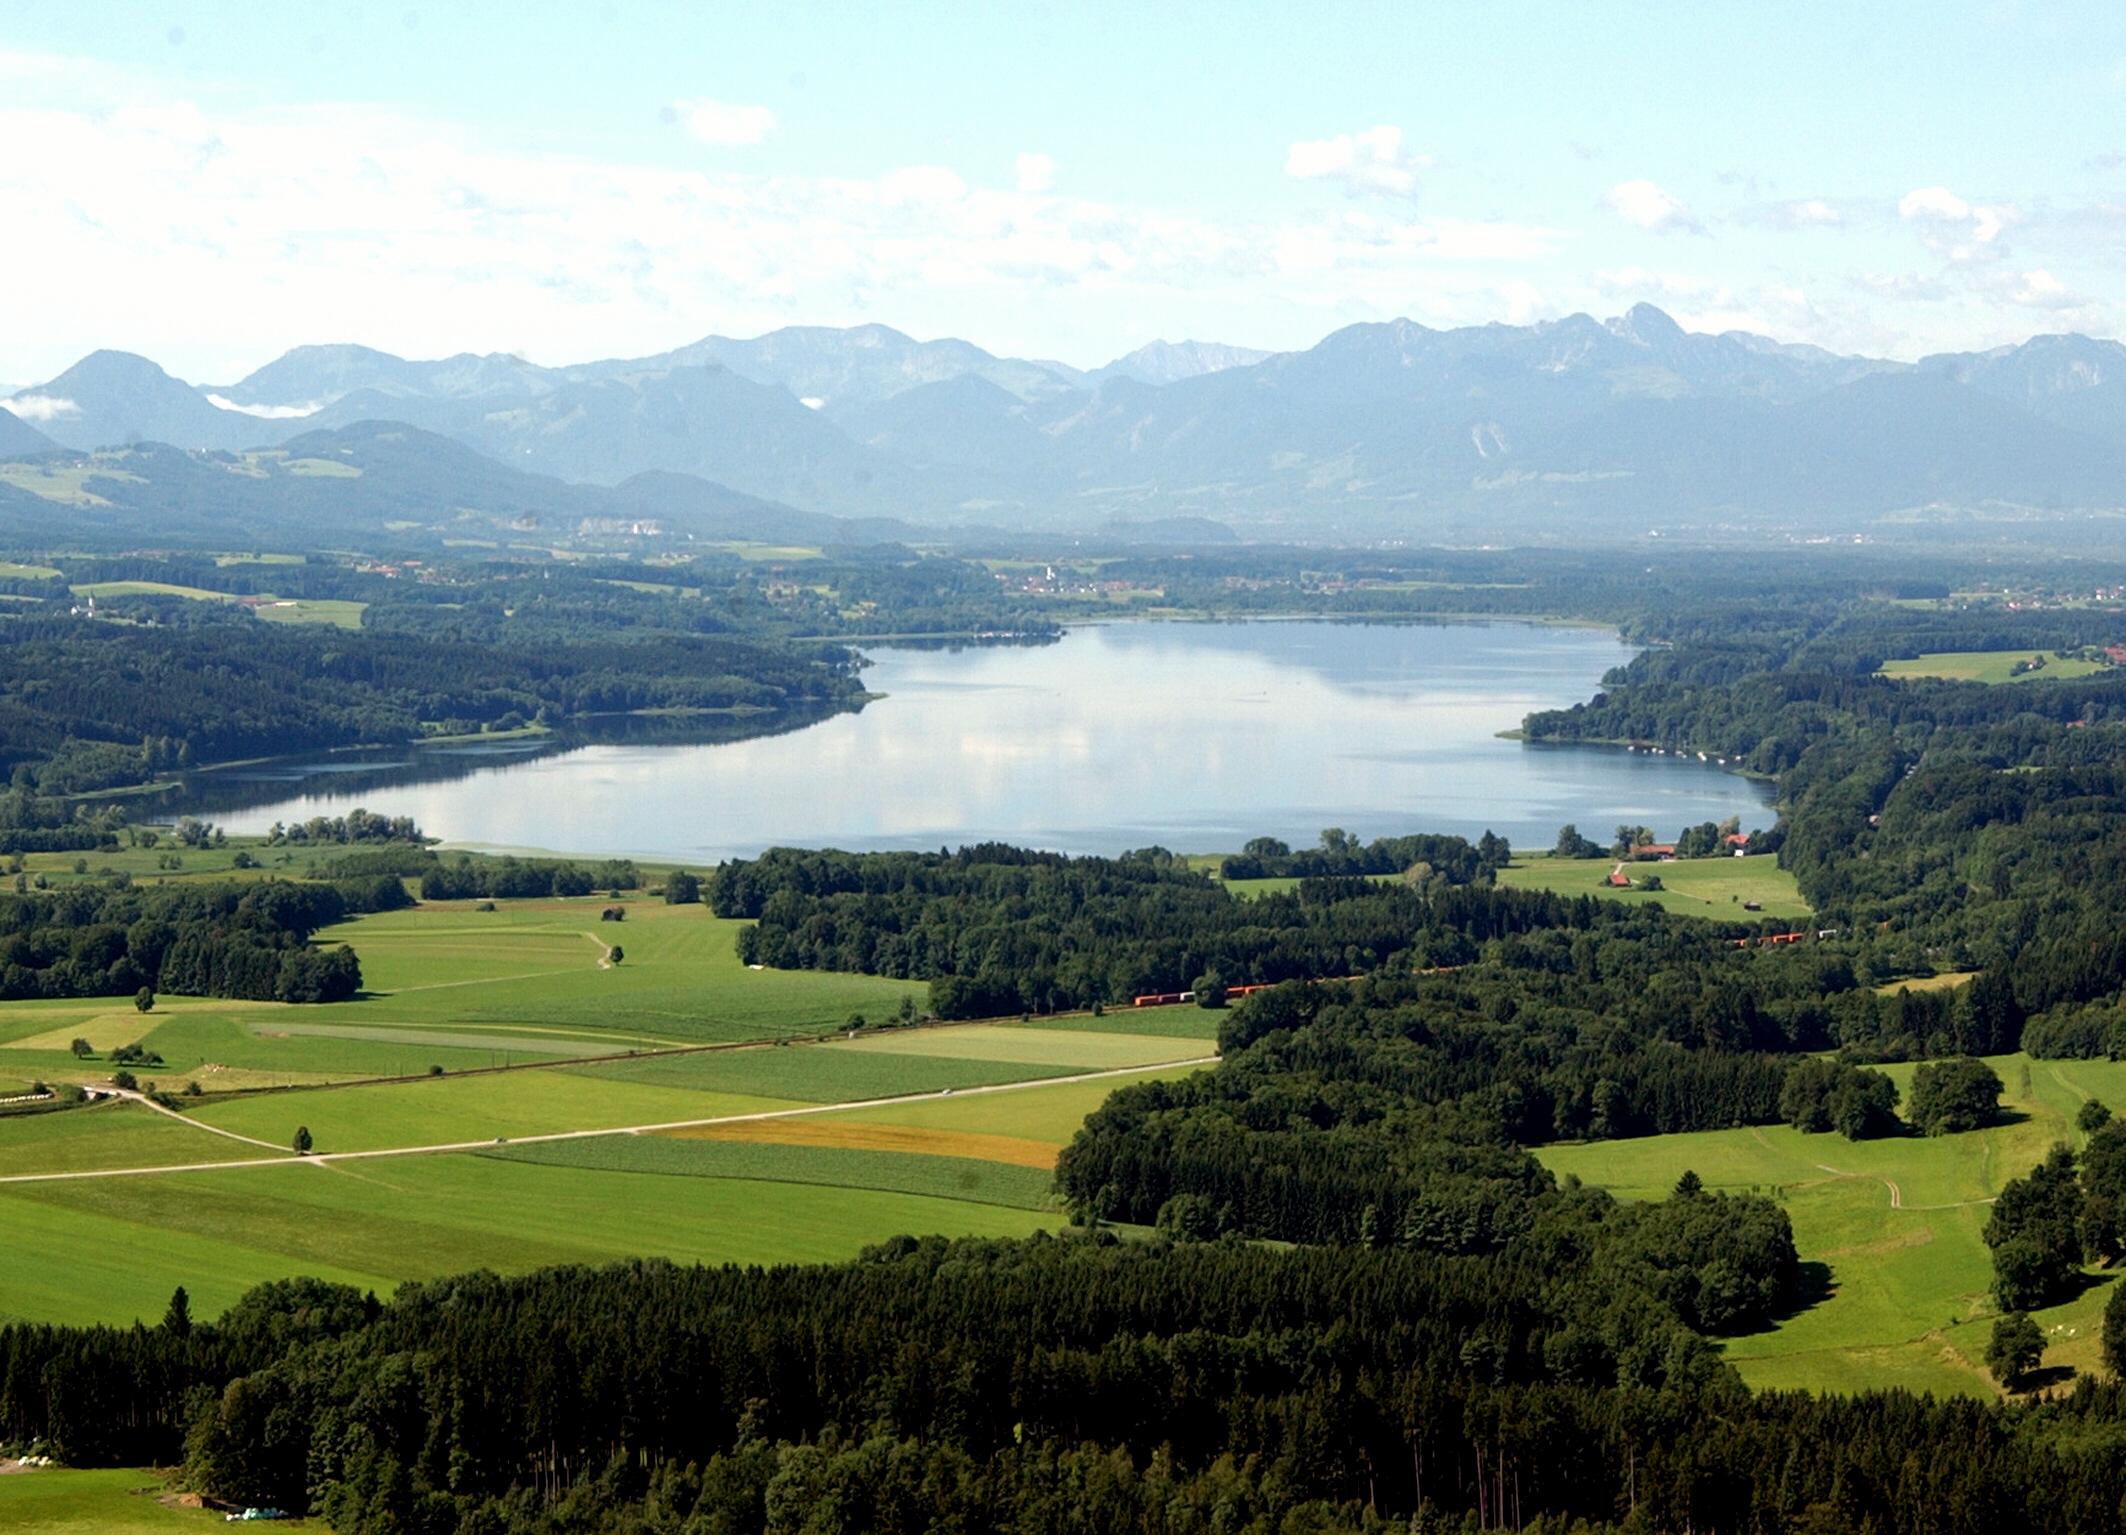 Mit knapp 6,5 km² ist der Simssee der größte See im Landkreis Rosenheim.
